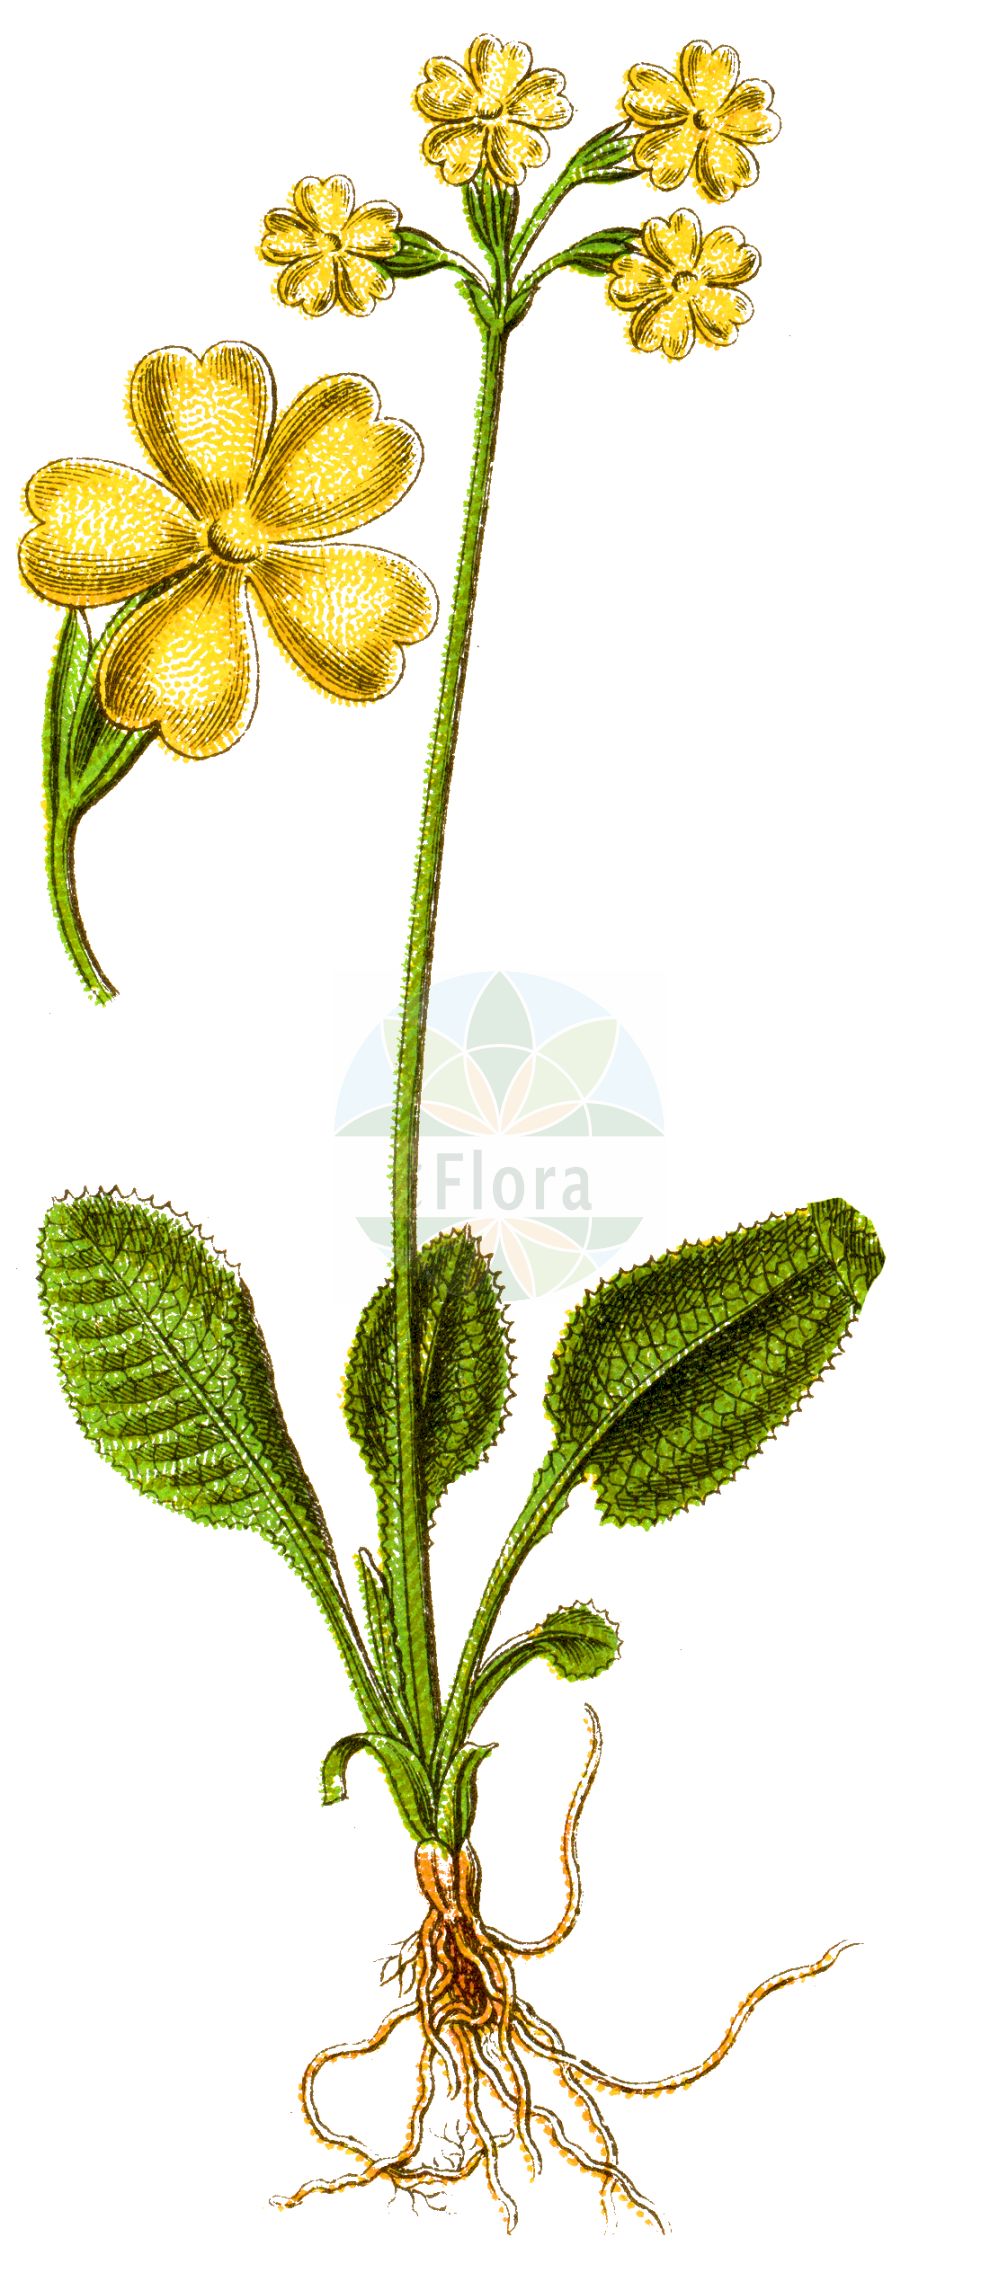 Historische Abbildung von Primula elatior (Hohe Schlüsselblume - Oxlip). Das Bild zeigt Blatt, Bluete, Frucht und Same. ---- Historical Drawing of Primula elatior (Hohe Schlüsselblume - Oxlip). The image is showing leaf, flower, fruit and seed.(Primula elatior,Hohe Schlüsselblume,Oxlip,Primula elatior,Primula perreiniana,Primula veris var. elatior,Hohe Schluesselblume,Grosse Schluesselblume,Hohe Primel,Oxlip,Paigle,Primula,Schlüsselblume,Primrose,Primulaceae,Schlüsselblumengewächse,Primrose family,Blatt,Bluete,Frucht,Same,leaf,flower,fruit,seed,Sturm (1796f))